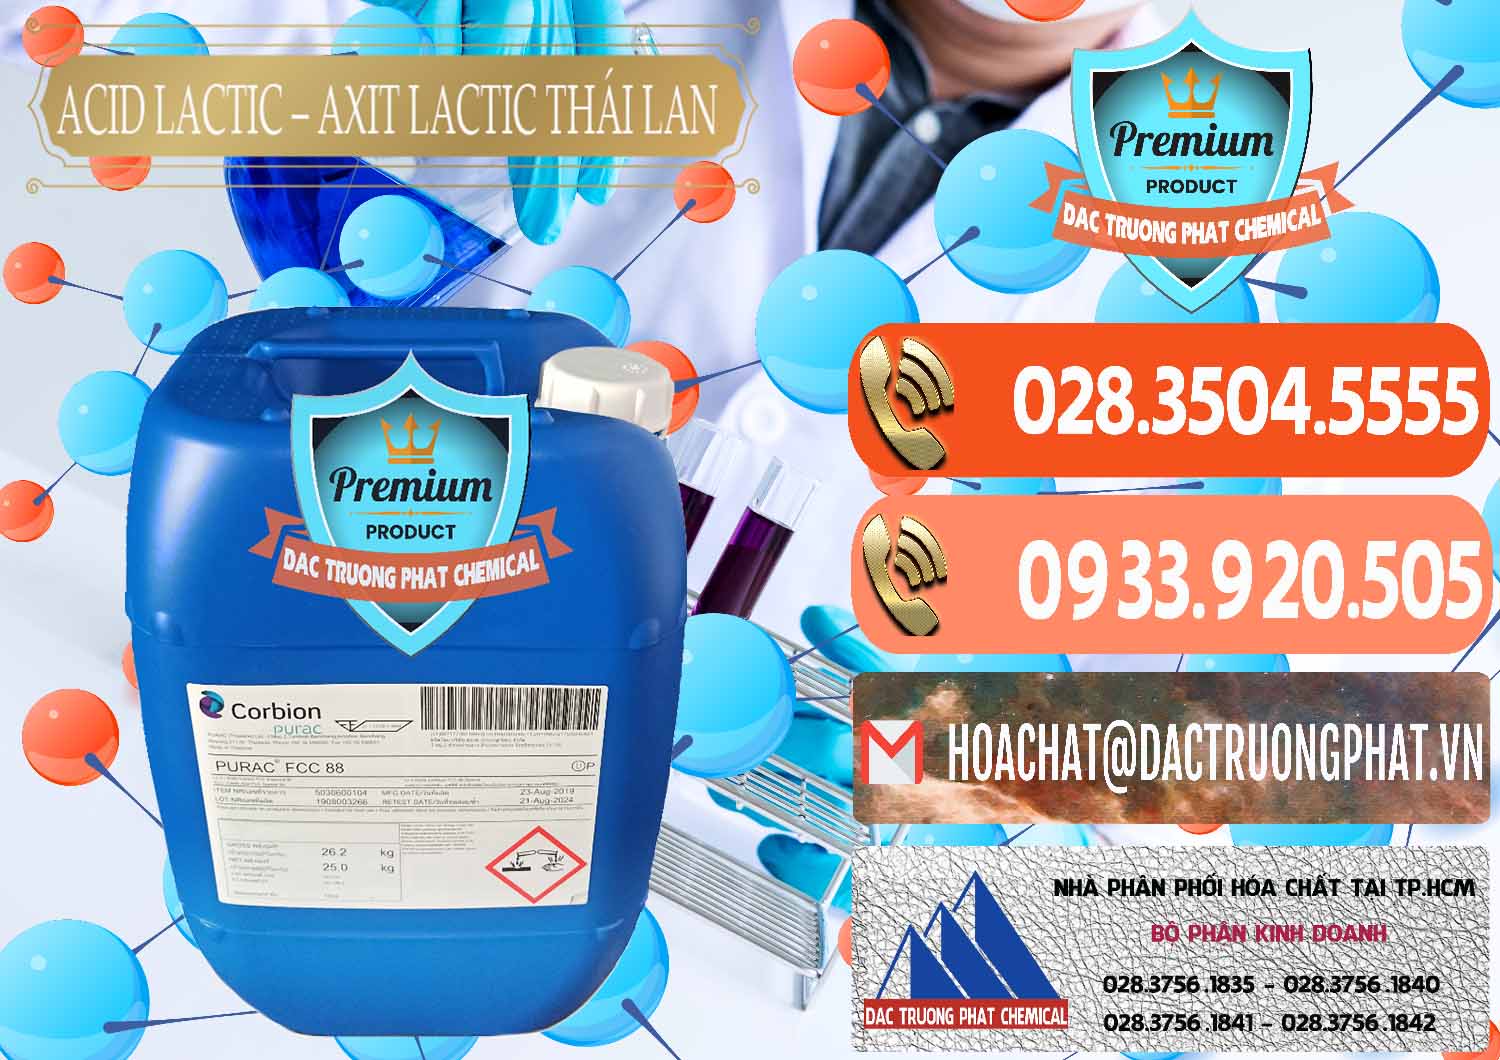 Công ty chuyên cung cấp _ bán Acid Lactic – Axit Lactic Thái Lan Purac FCC 88 - 0012 - Cty chuyên kinh doanh & cung cấp hóa chất tại TP.HCM - hoachatmientay.com